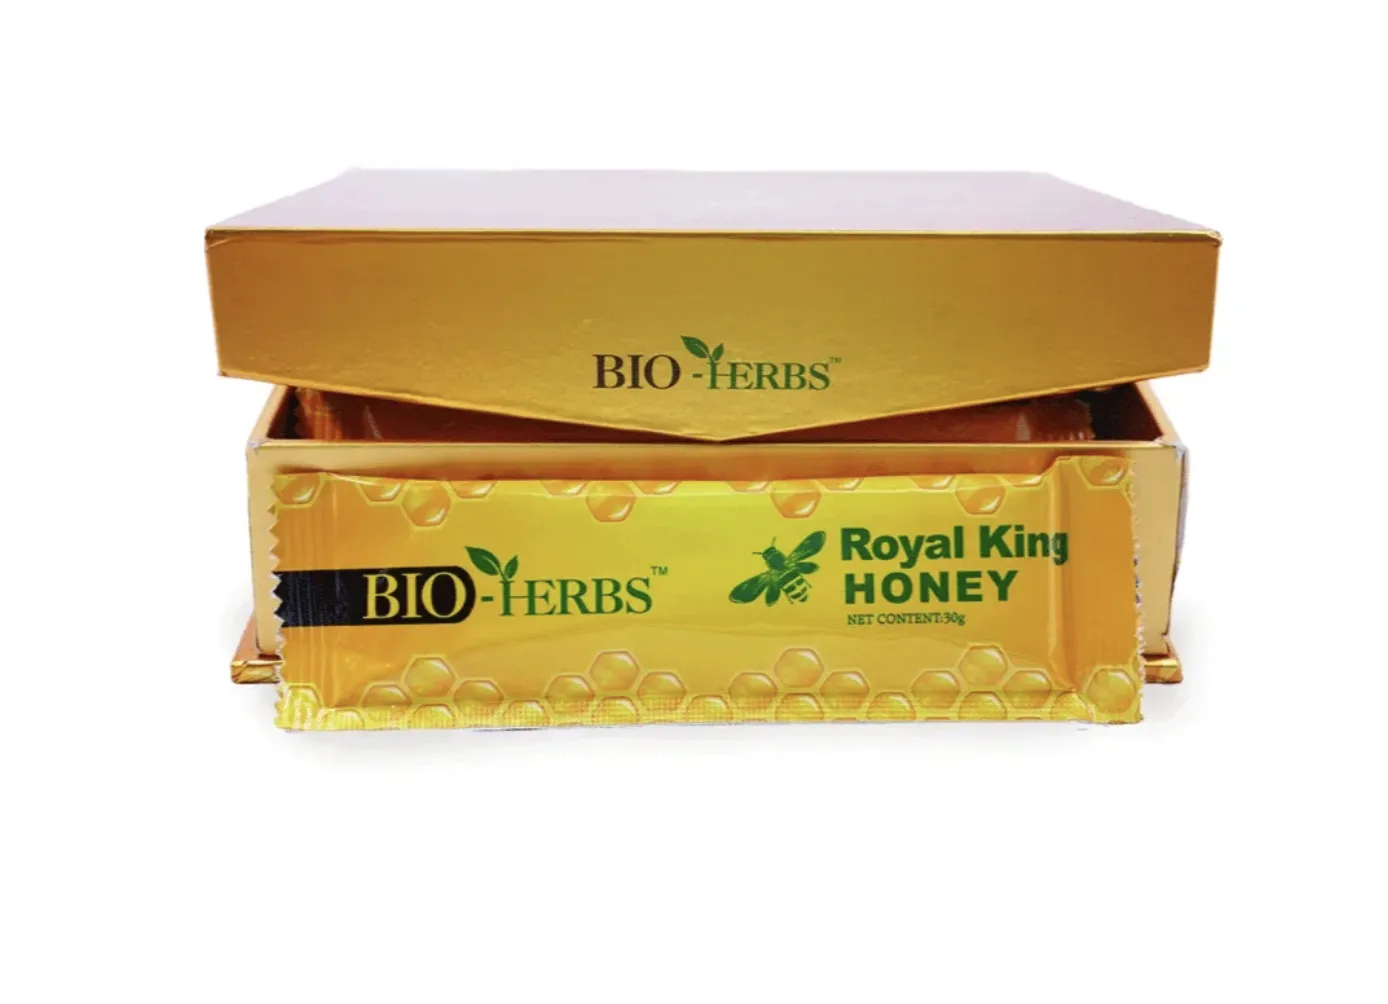 Bioherbs Royal King Honey Drs Secret erkaklar salomatligi uchun Qirollik asal (300g, Malayziya)#3